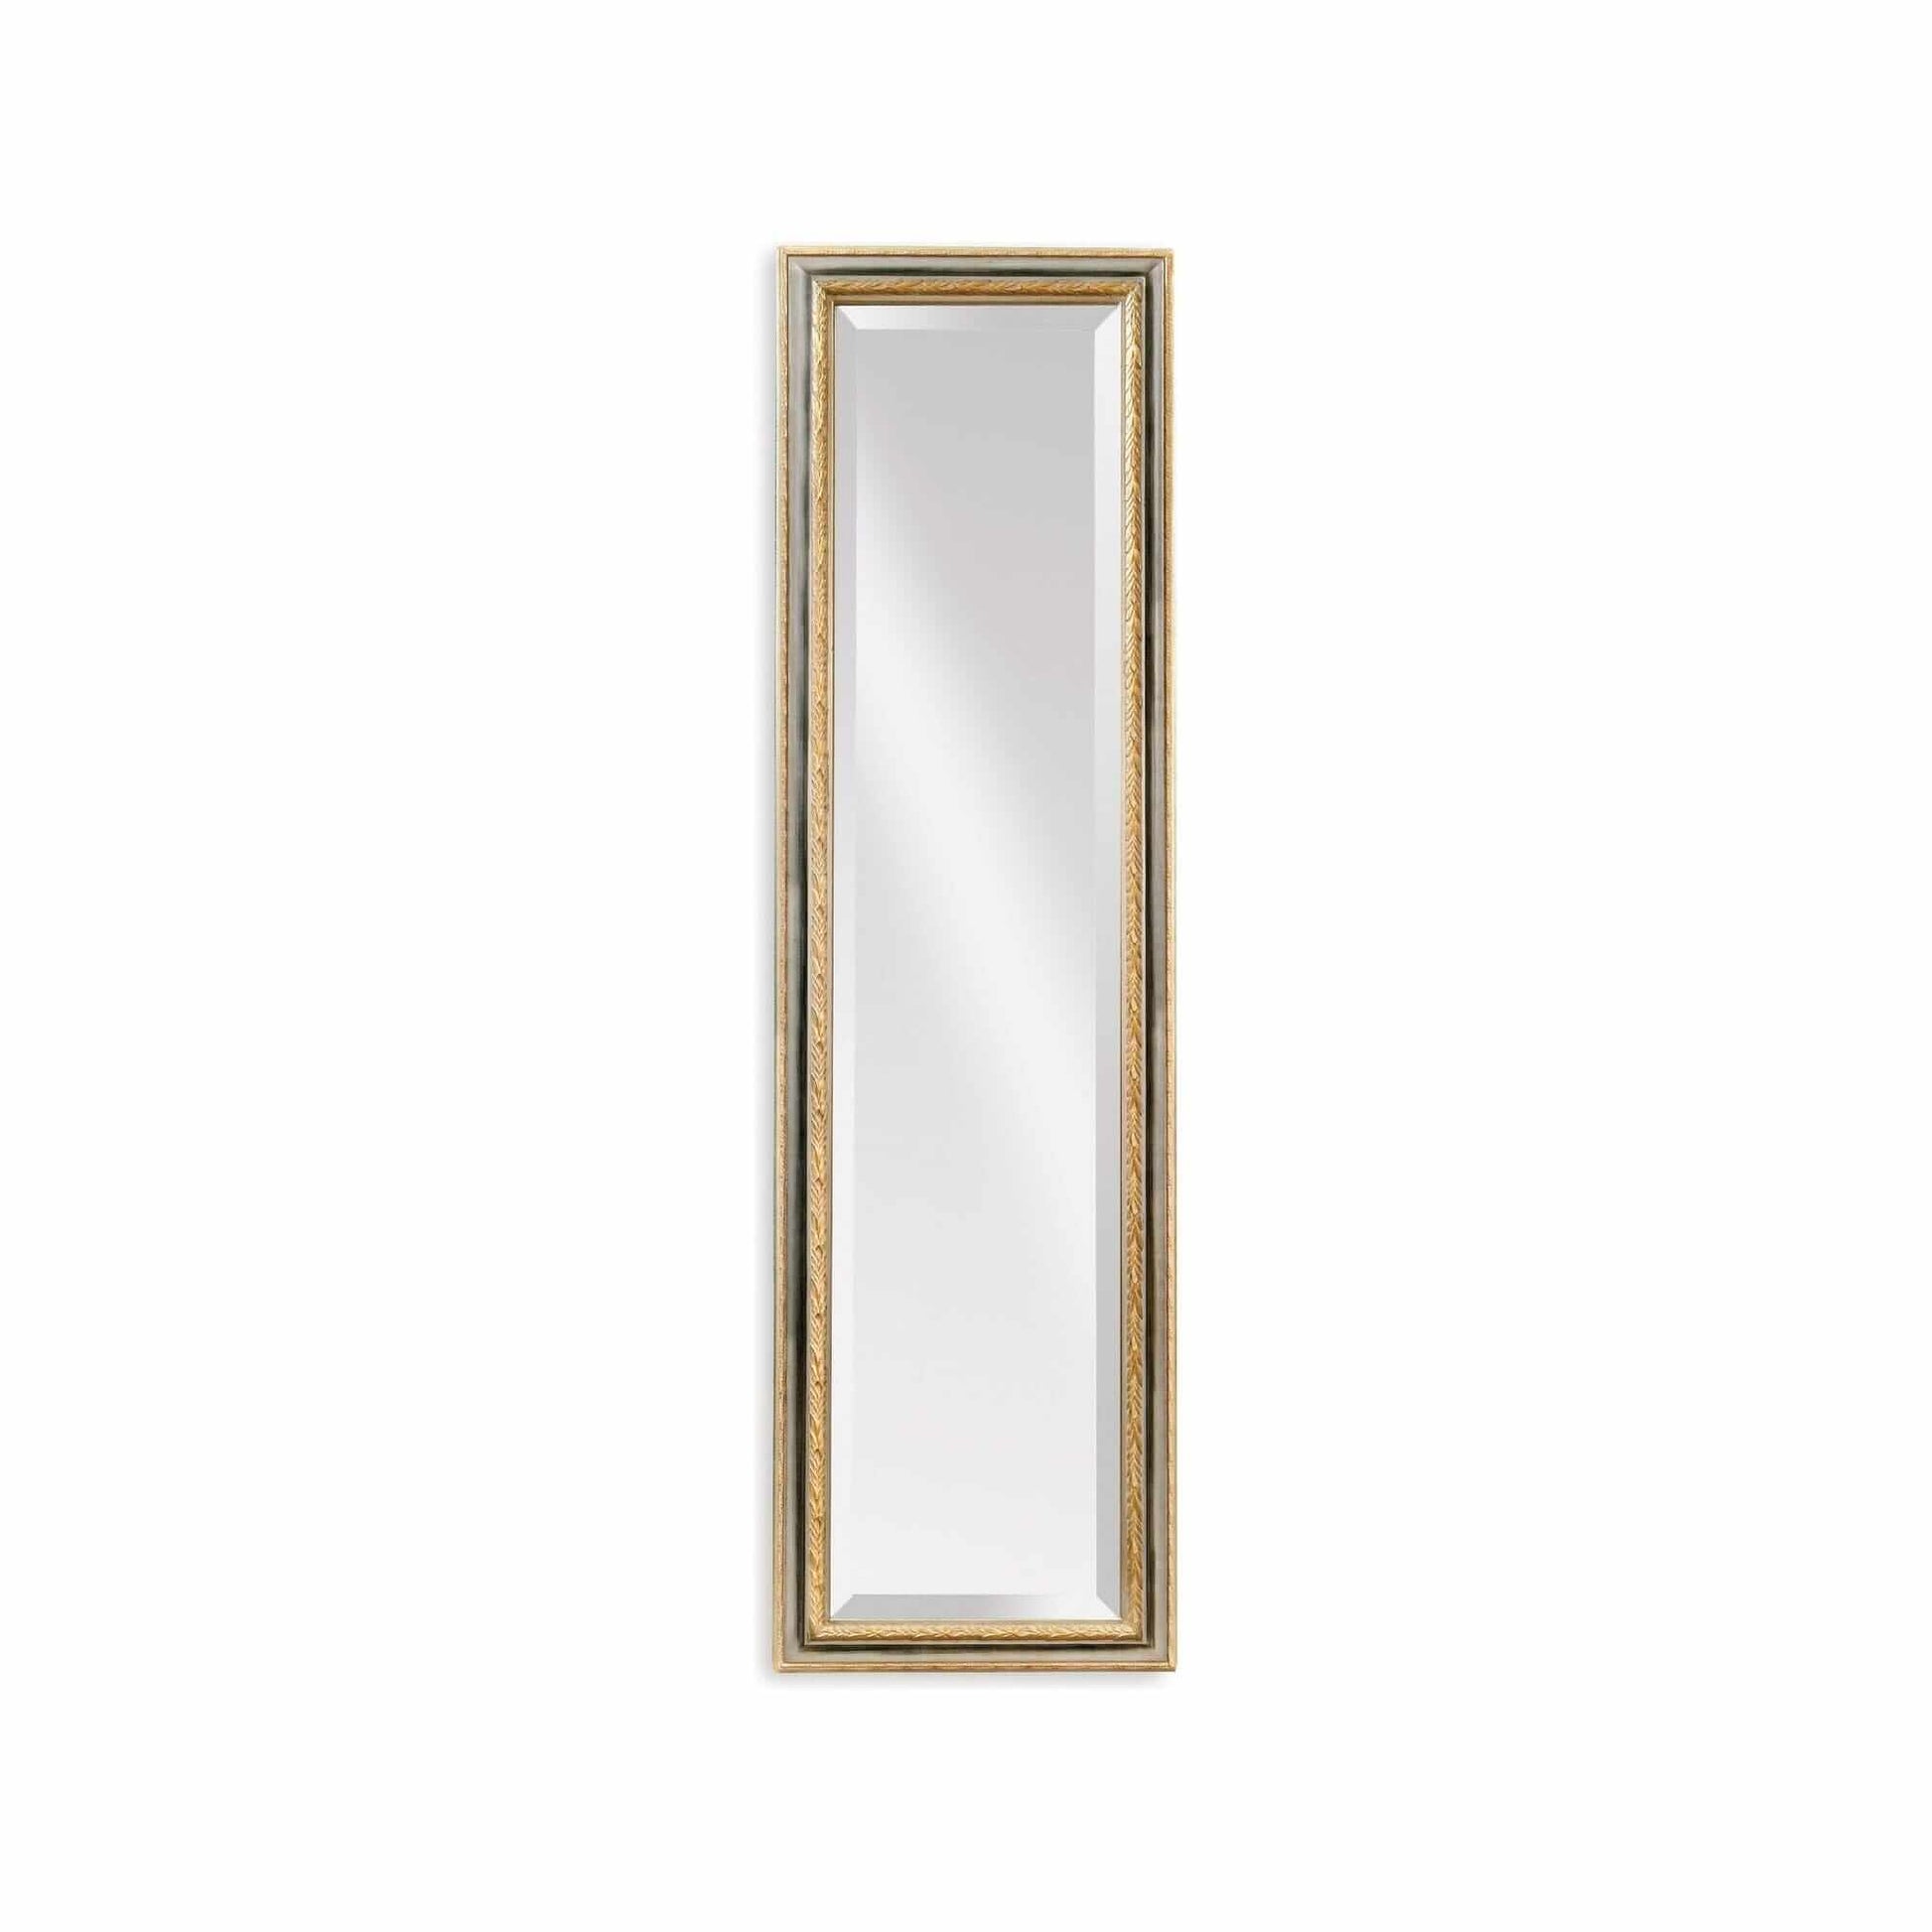 Bassett Mirror Regis Cheval Floor Mirror 18W x 64H